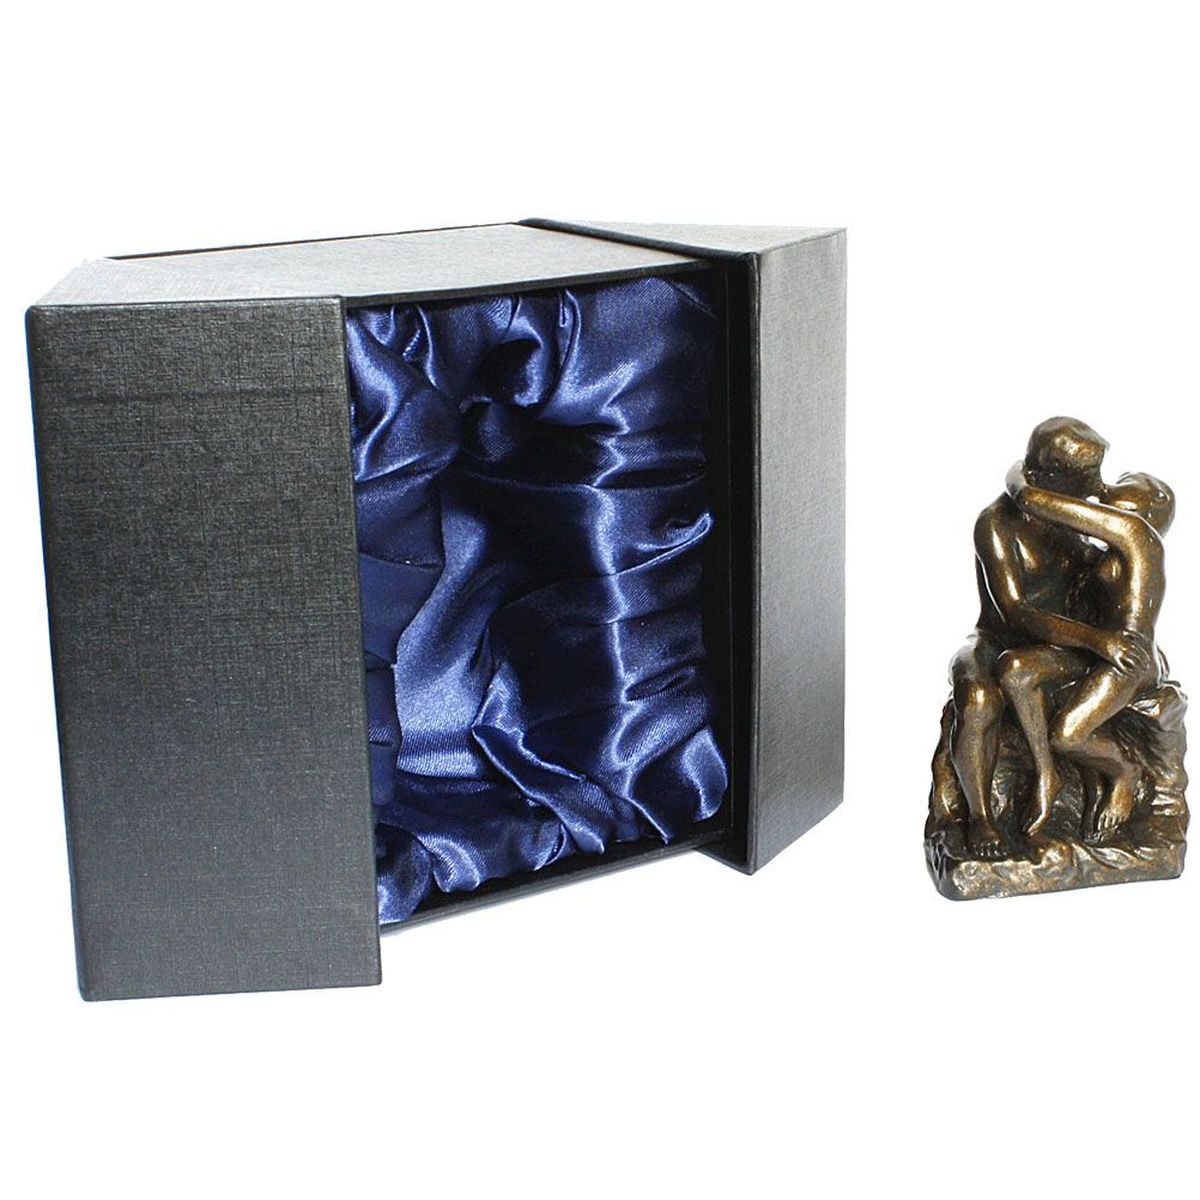 Figurine miniature reproduction Le Baiser de Rodin